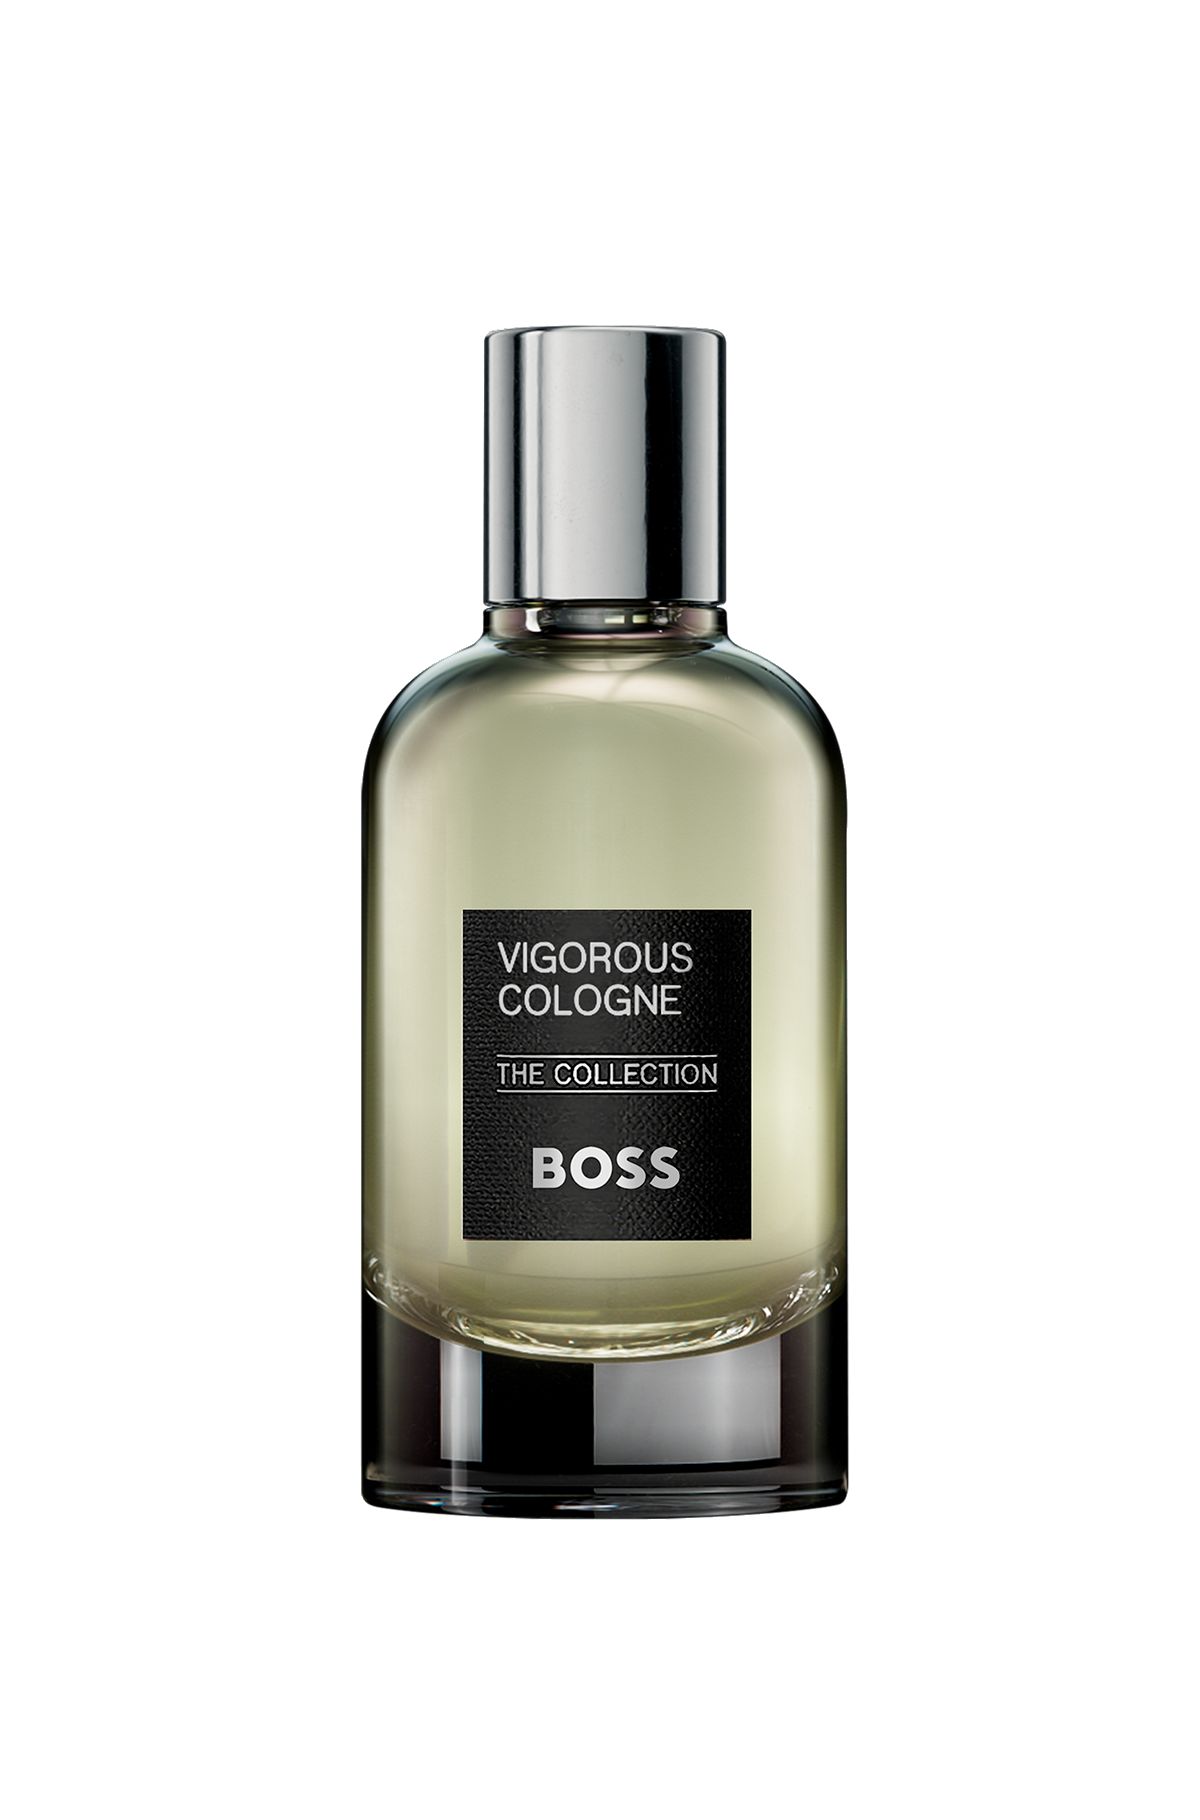 BOSS The Collection Vigorous Cologne eau de parfum 100ml, Assorted-Pre-Pack